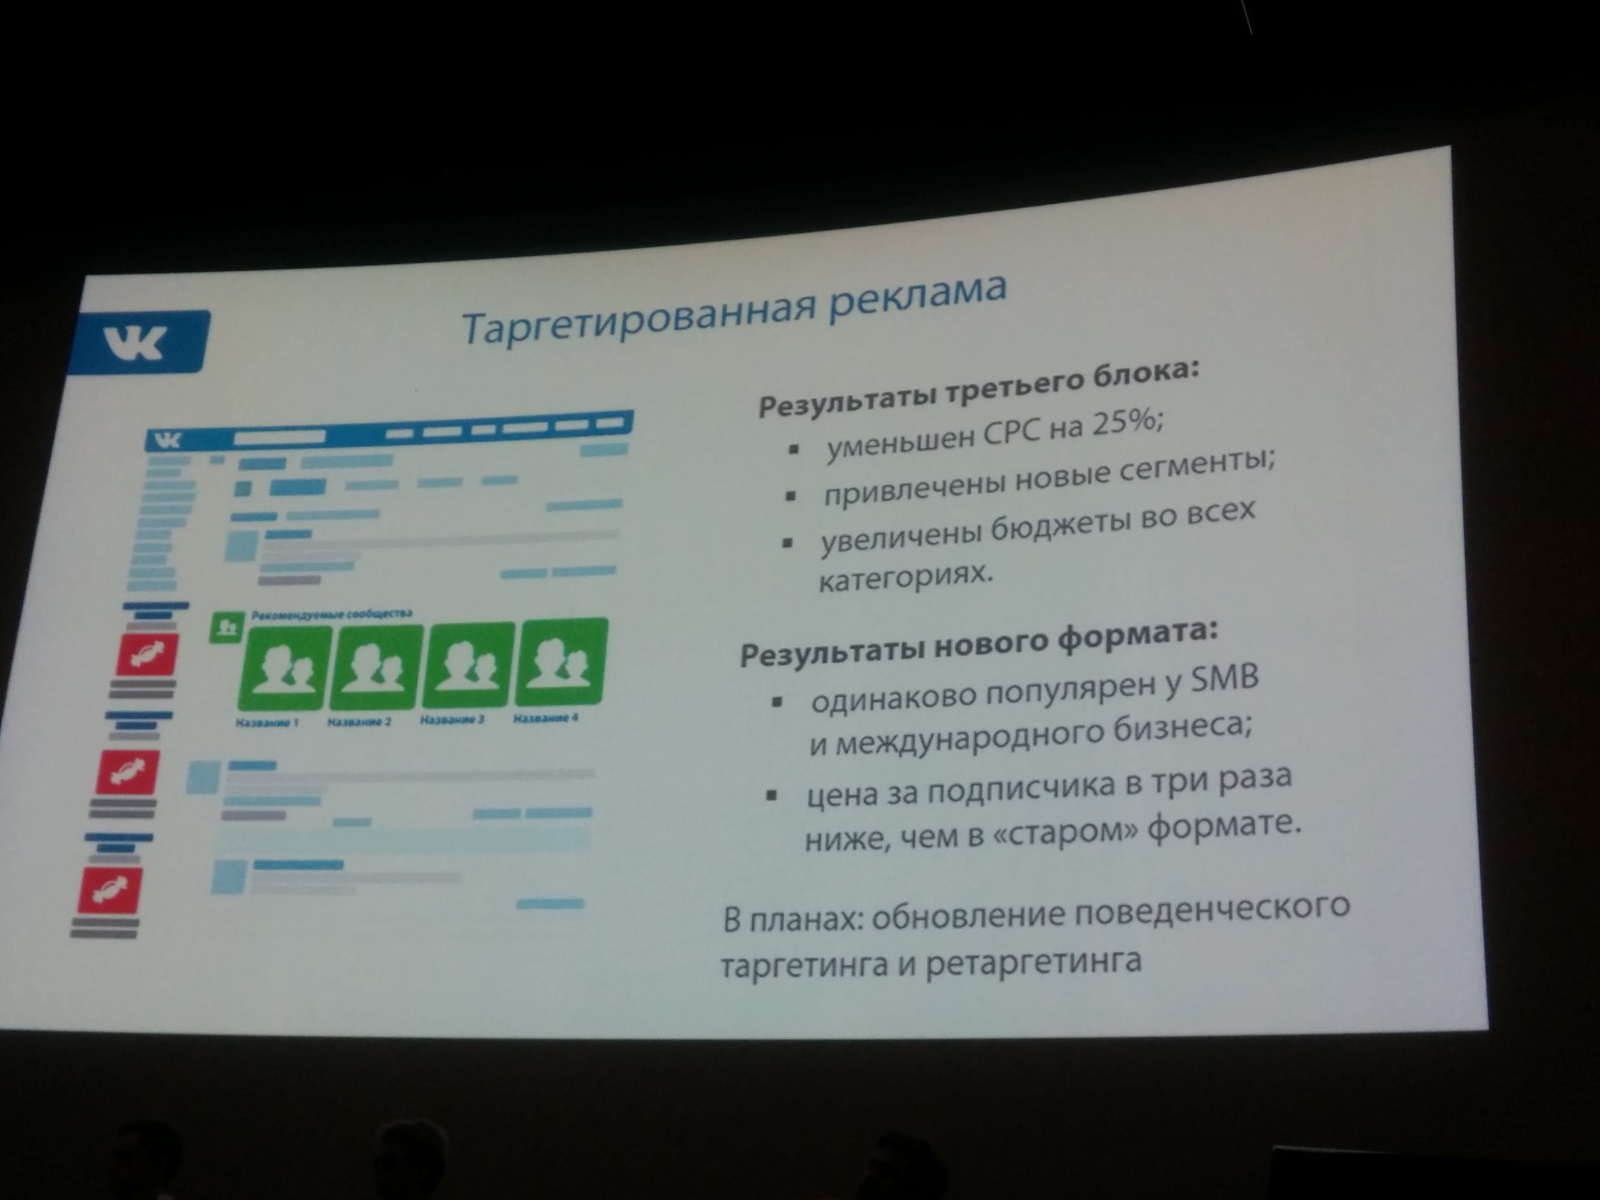 Круглов: Третий рекламный блок «ВКонтакте» уменьшил стоимость клика на 25% - 1